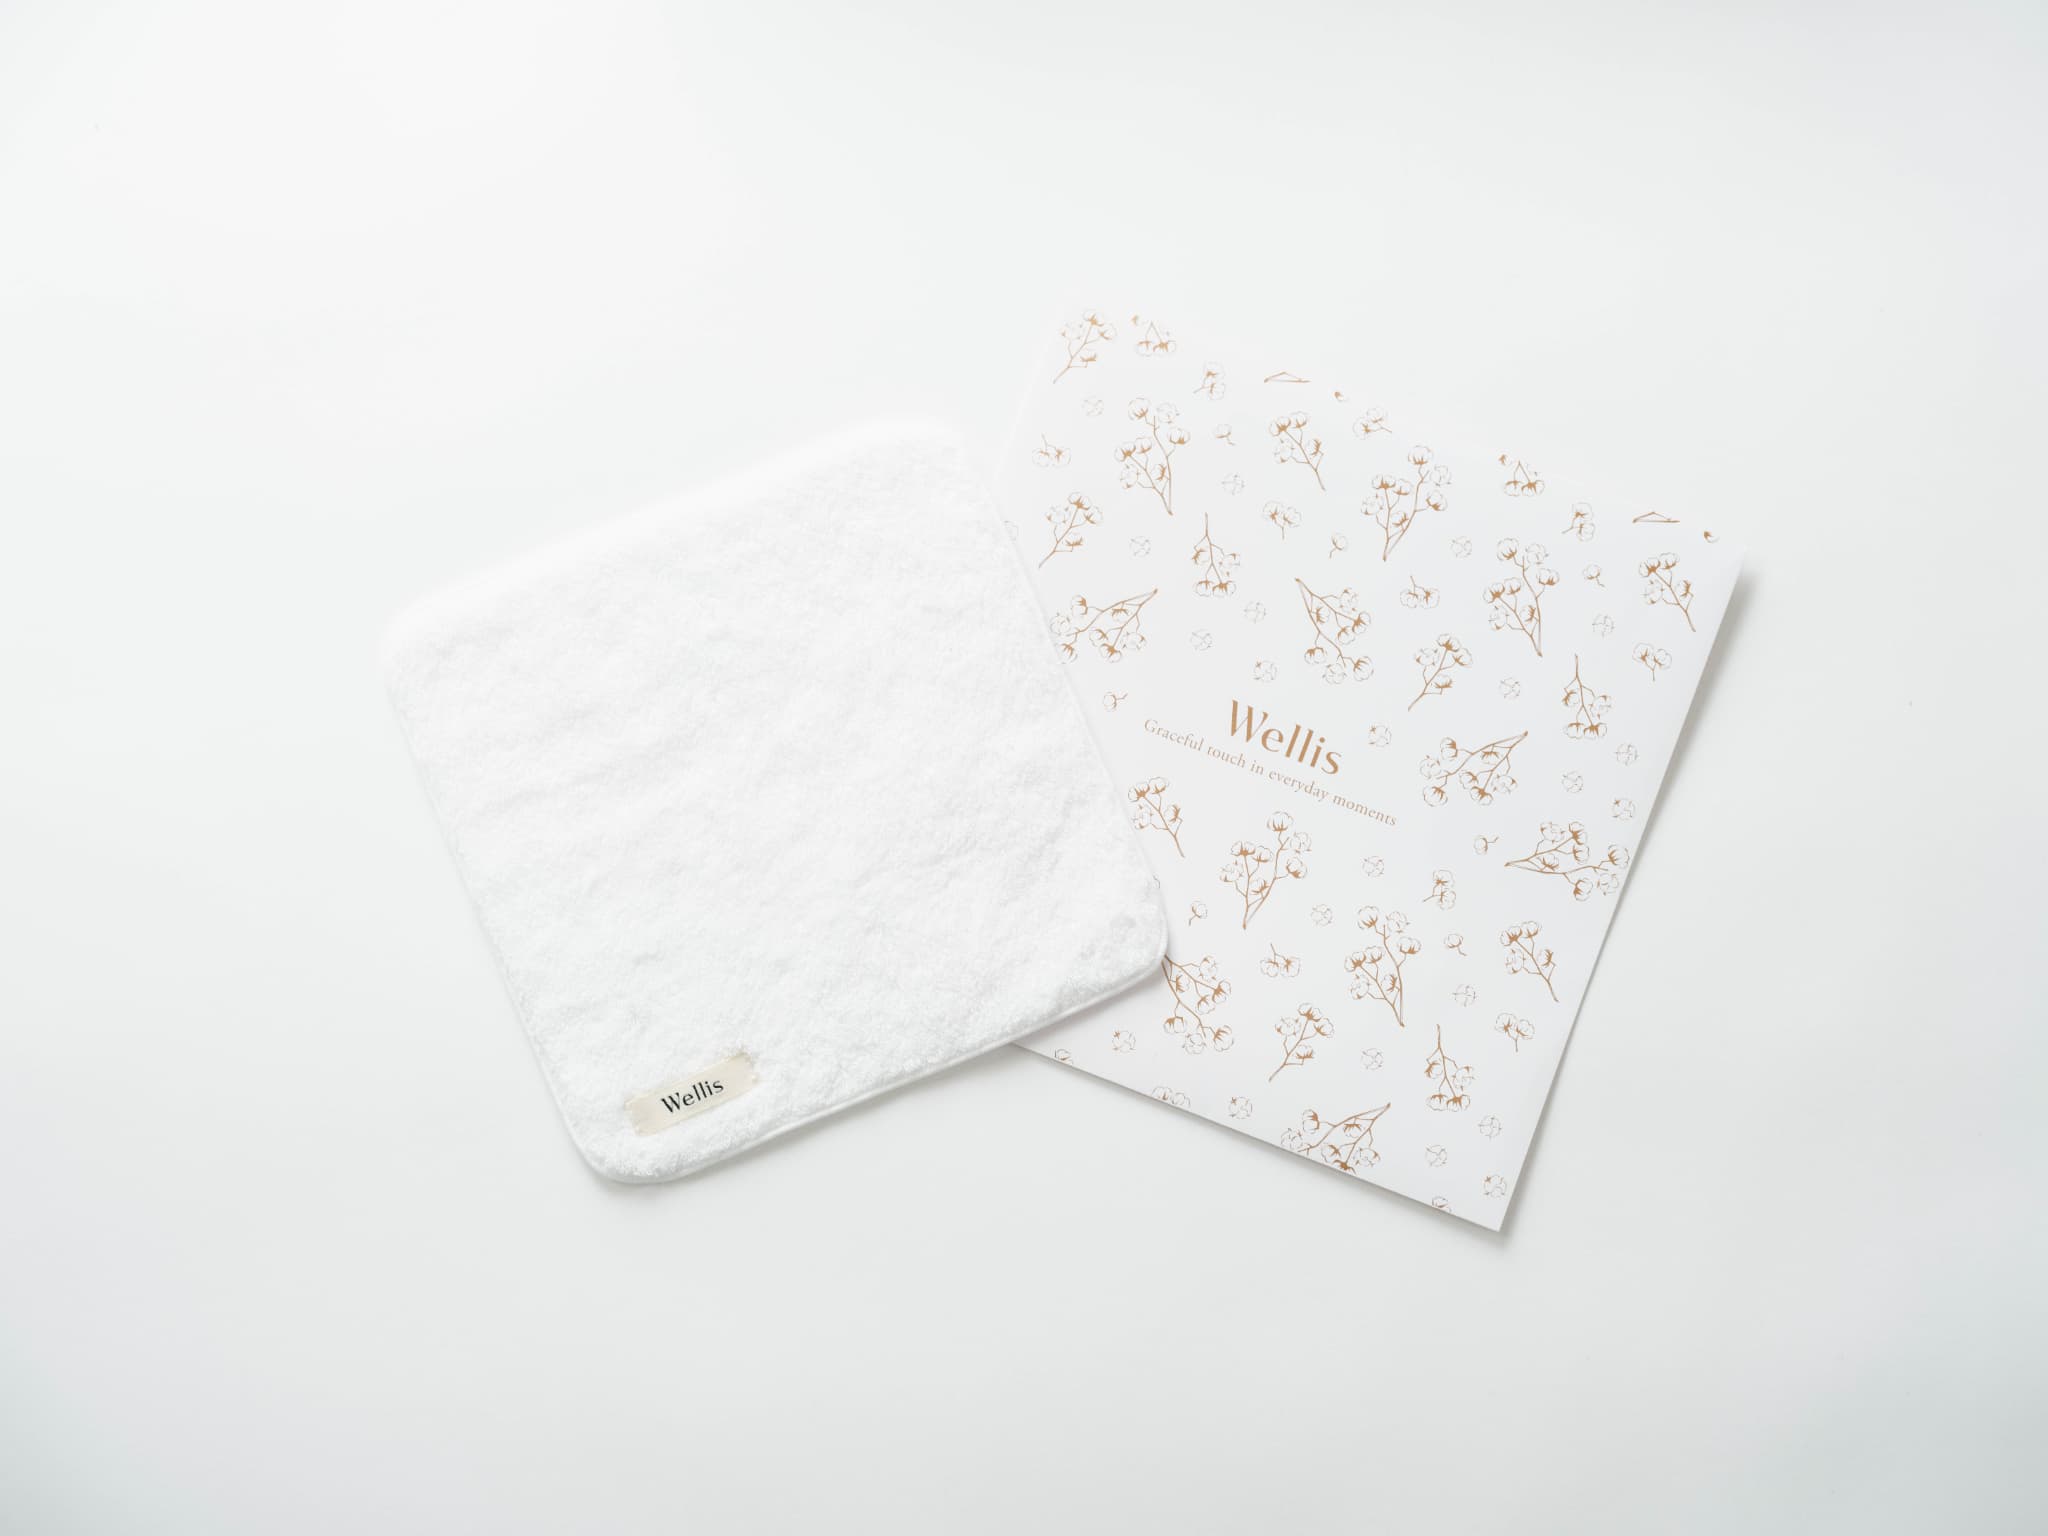 Wellis-towel-gift-handkerchief